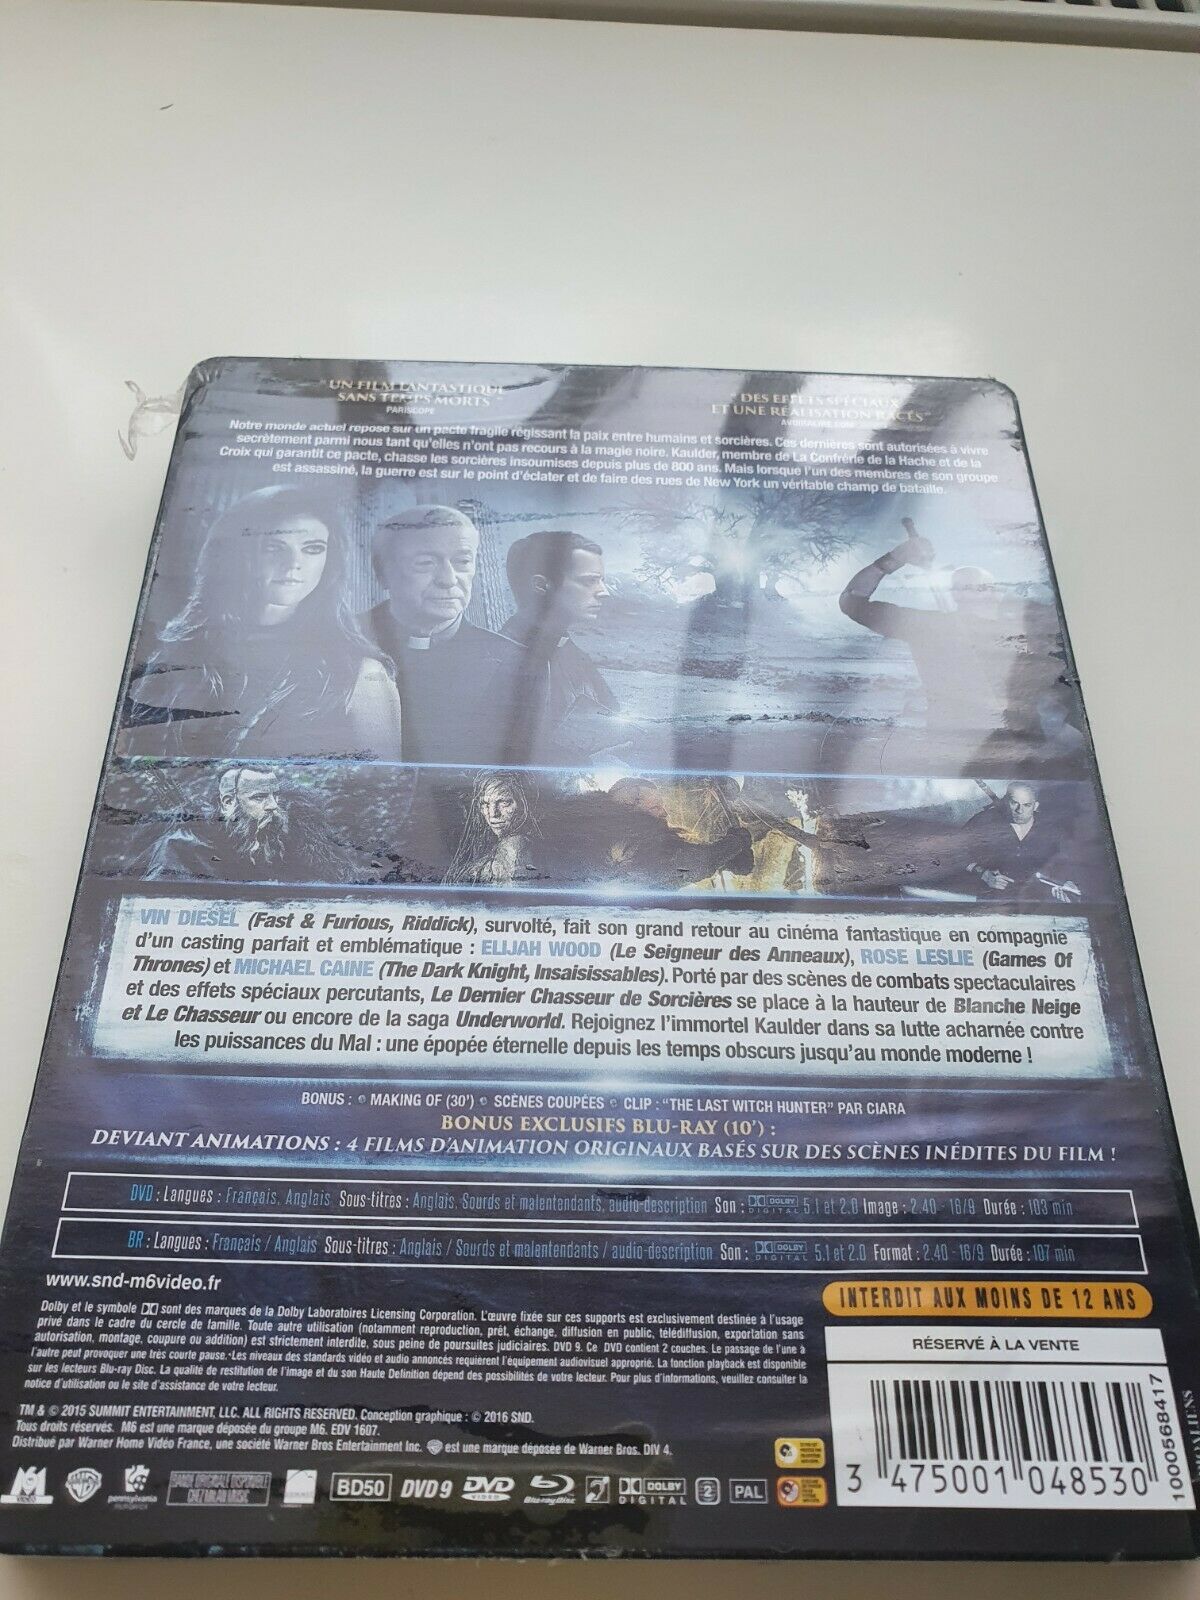 3475001048530 Le Dernier Chasseur de Sorcières 2016 Blu-ray + DVD STEELBOOK NEUF SOUS BLISTER